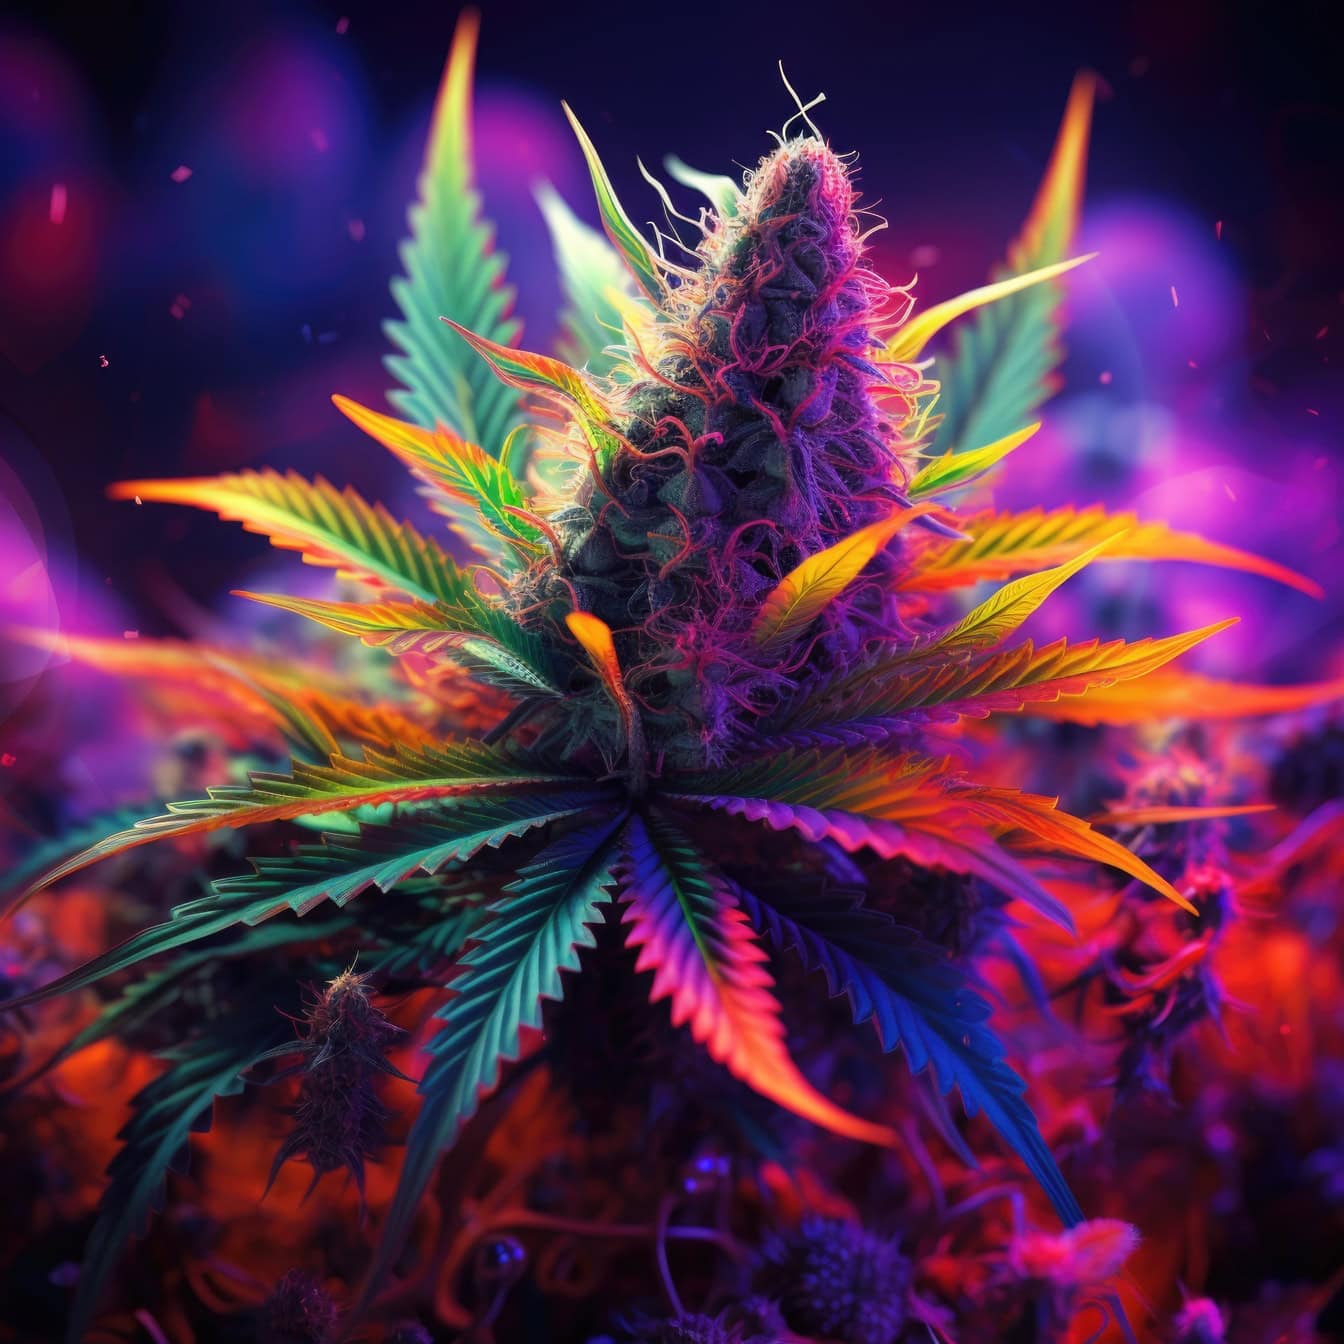 En levende grafik af en cannabisurt i psykedelisk popkunststil